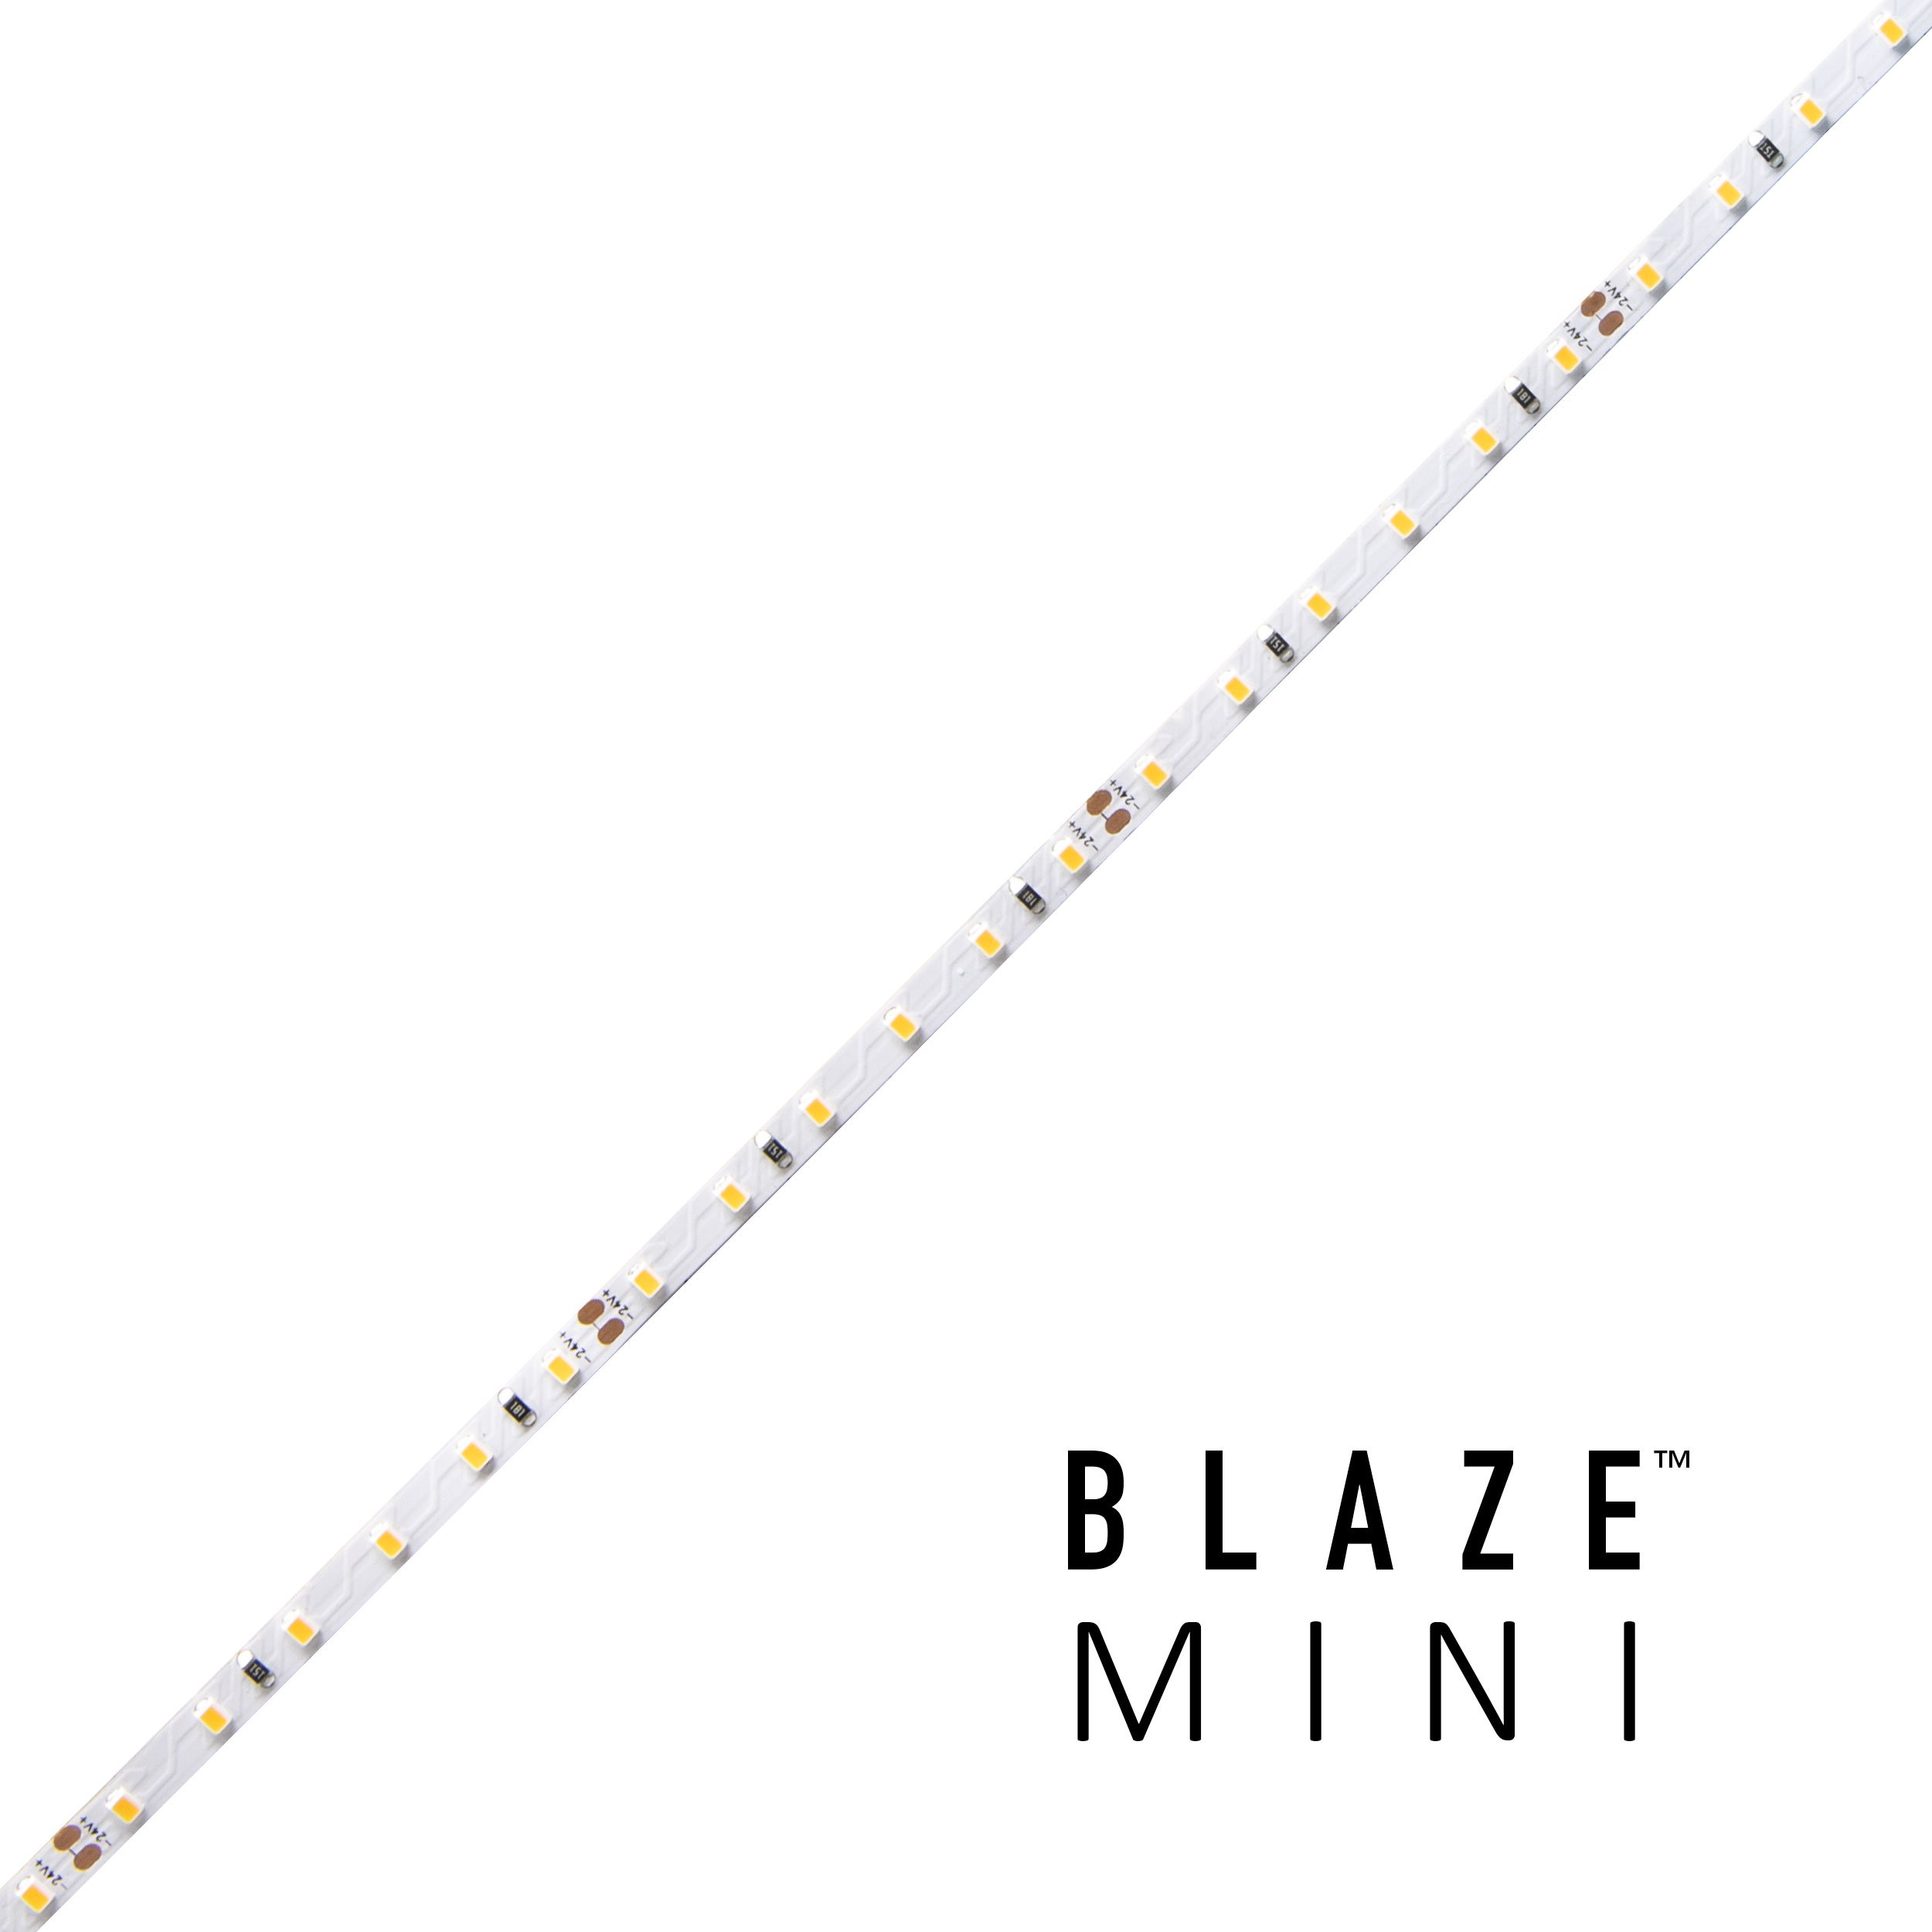 blaze-mini_-1.jpg